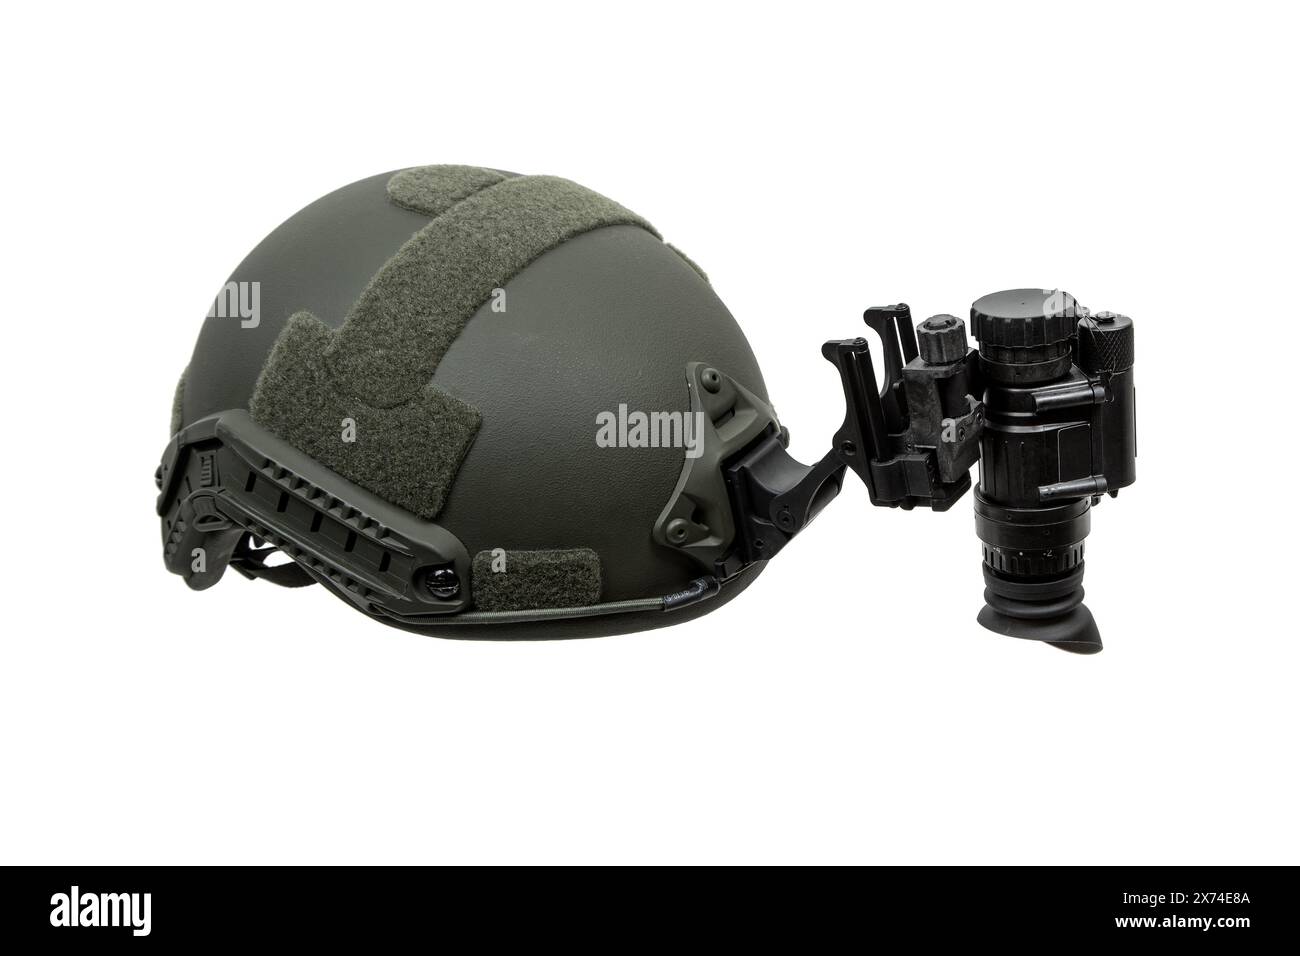 Nachtsichtgerät am Helm befestigt. Ein spezielles Gerät zur Beobachtung im Dunkeln. Ausrüstung für Militär, Polizei und Spezialkräfte. Isolat Stockfoto